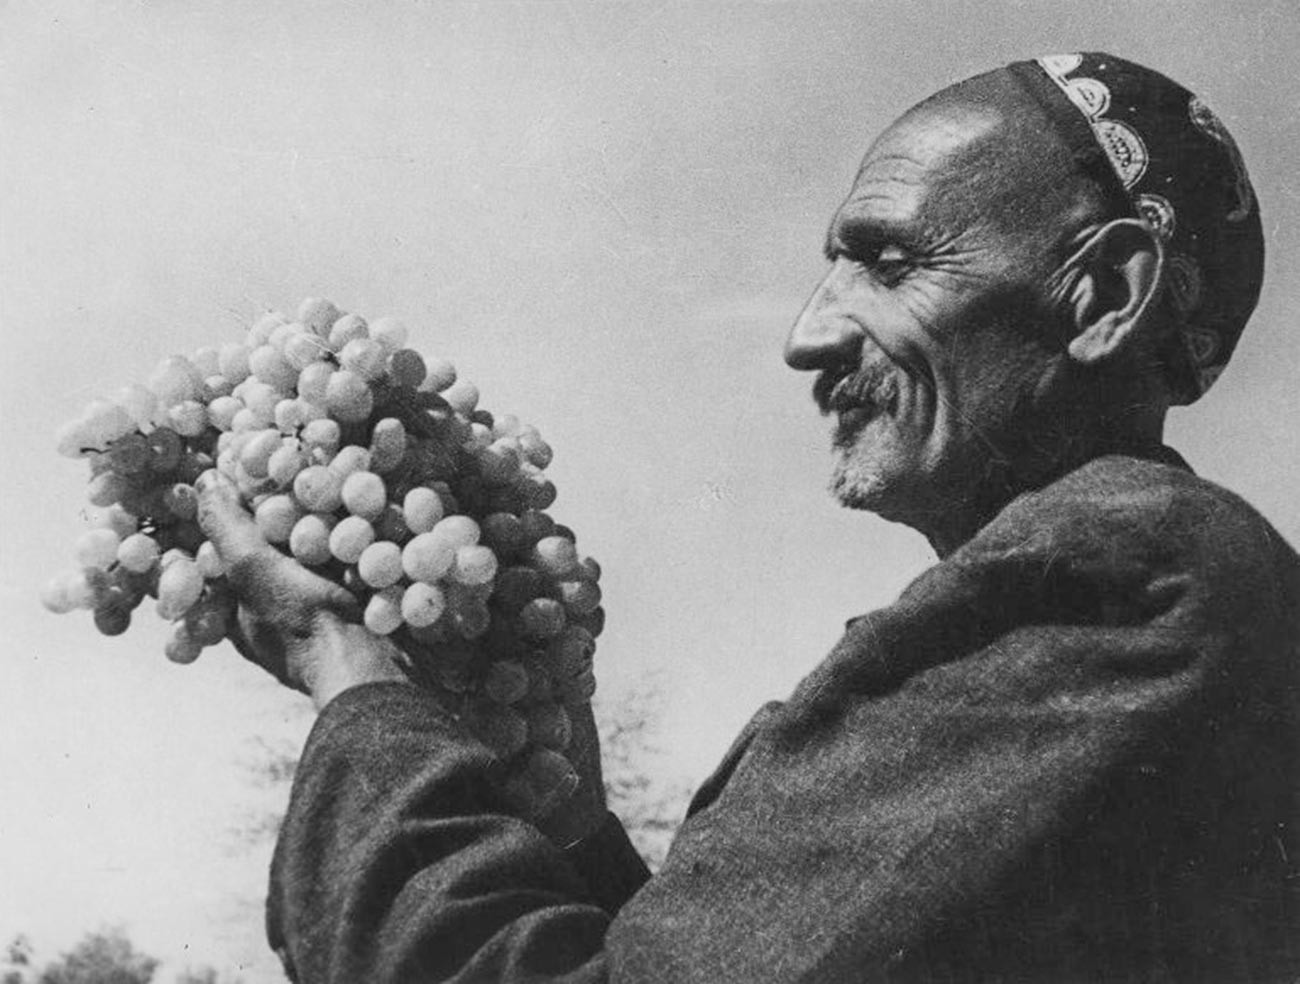 Rizamat Moussamoukhamedov, le meilleur vigneron d'Ouzbékistan, a créé une variété spéciale de raisins dans sa république, le Rundweiss. 1939